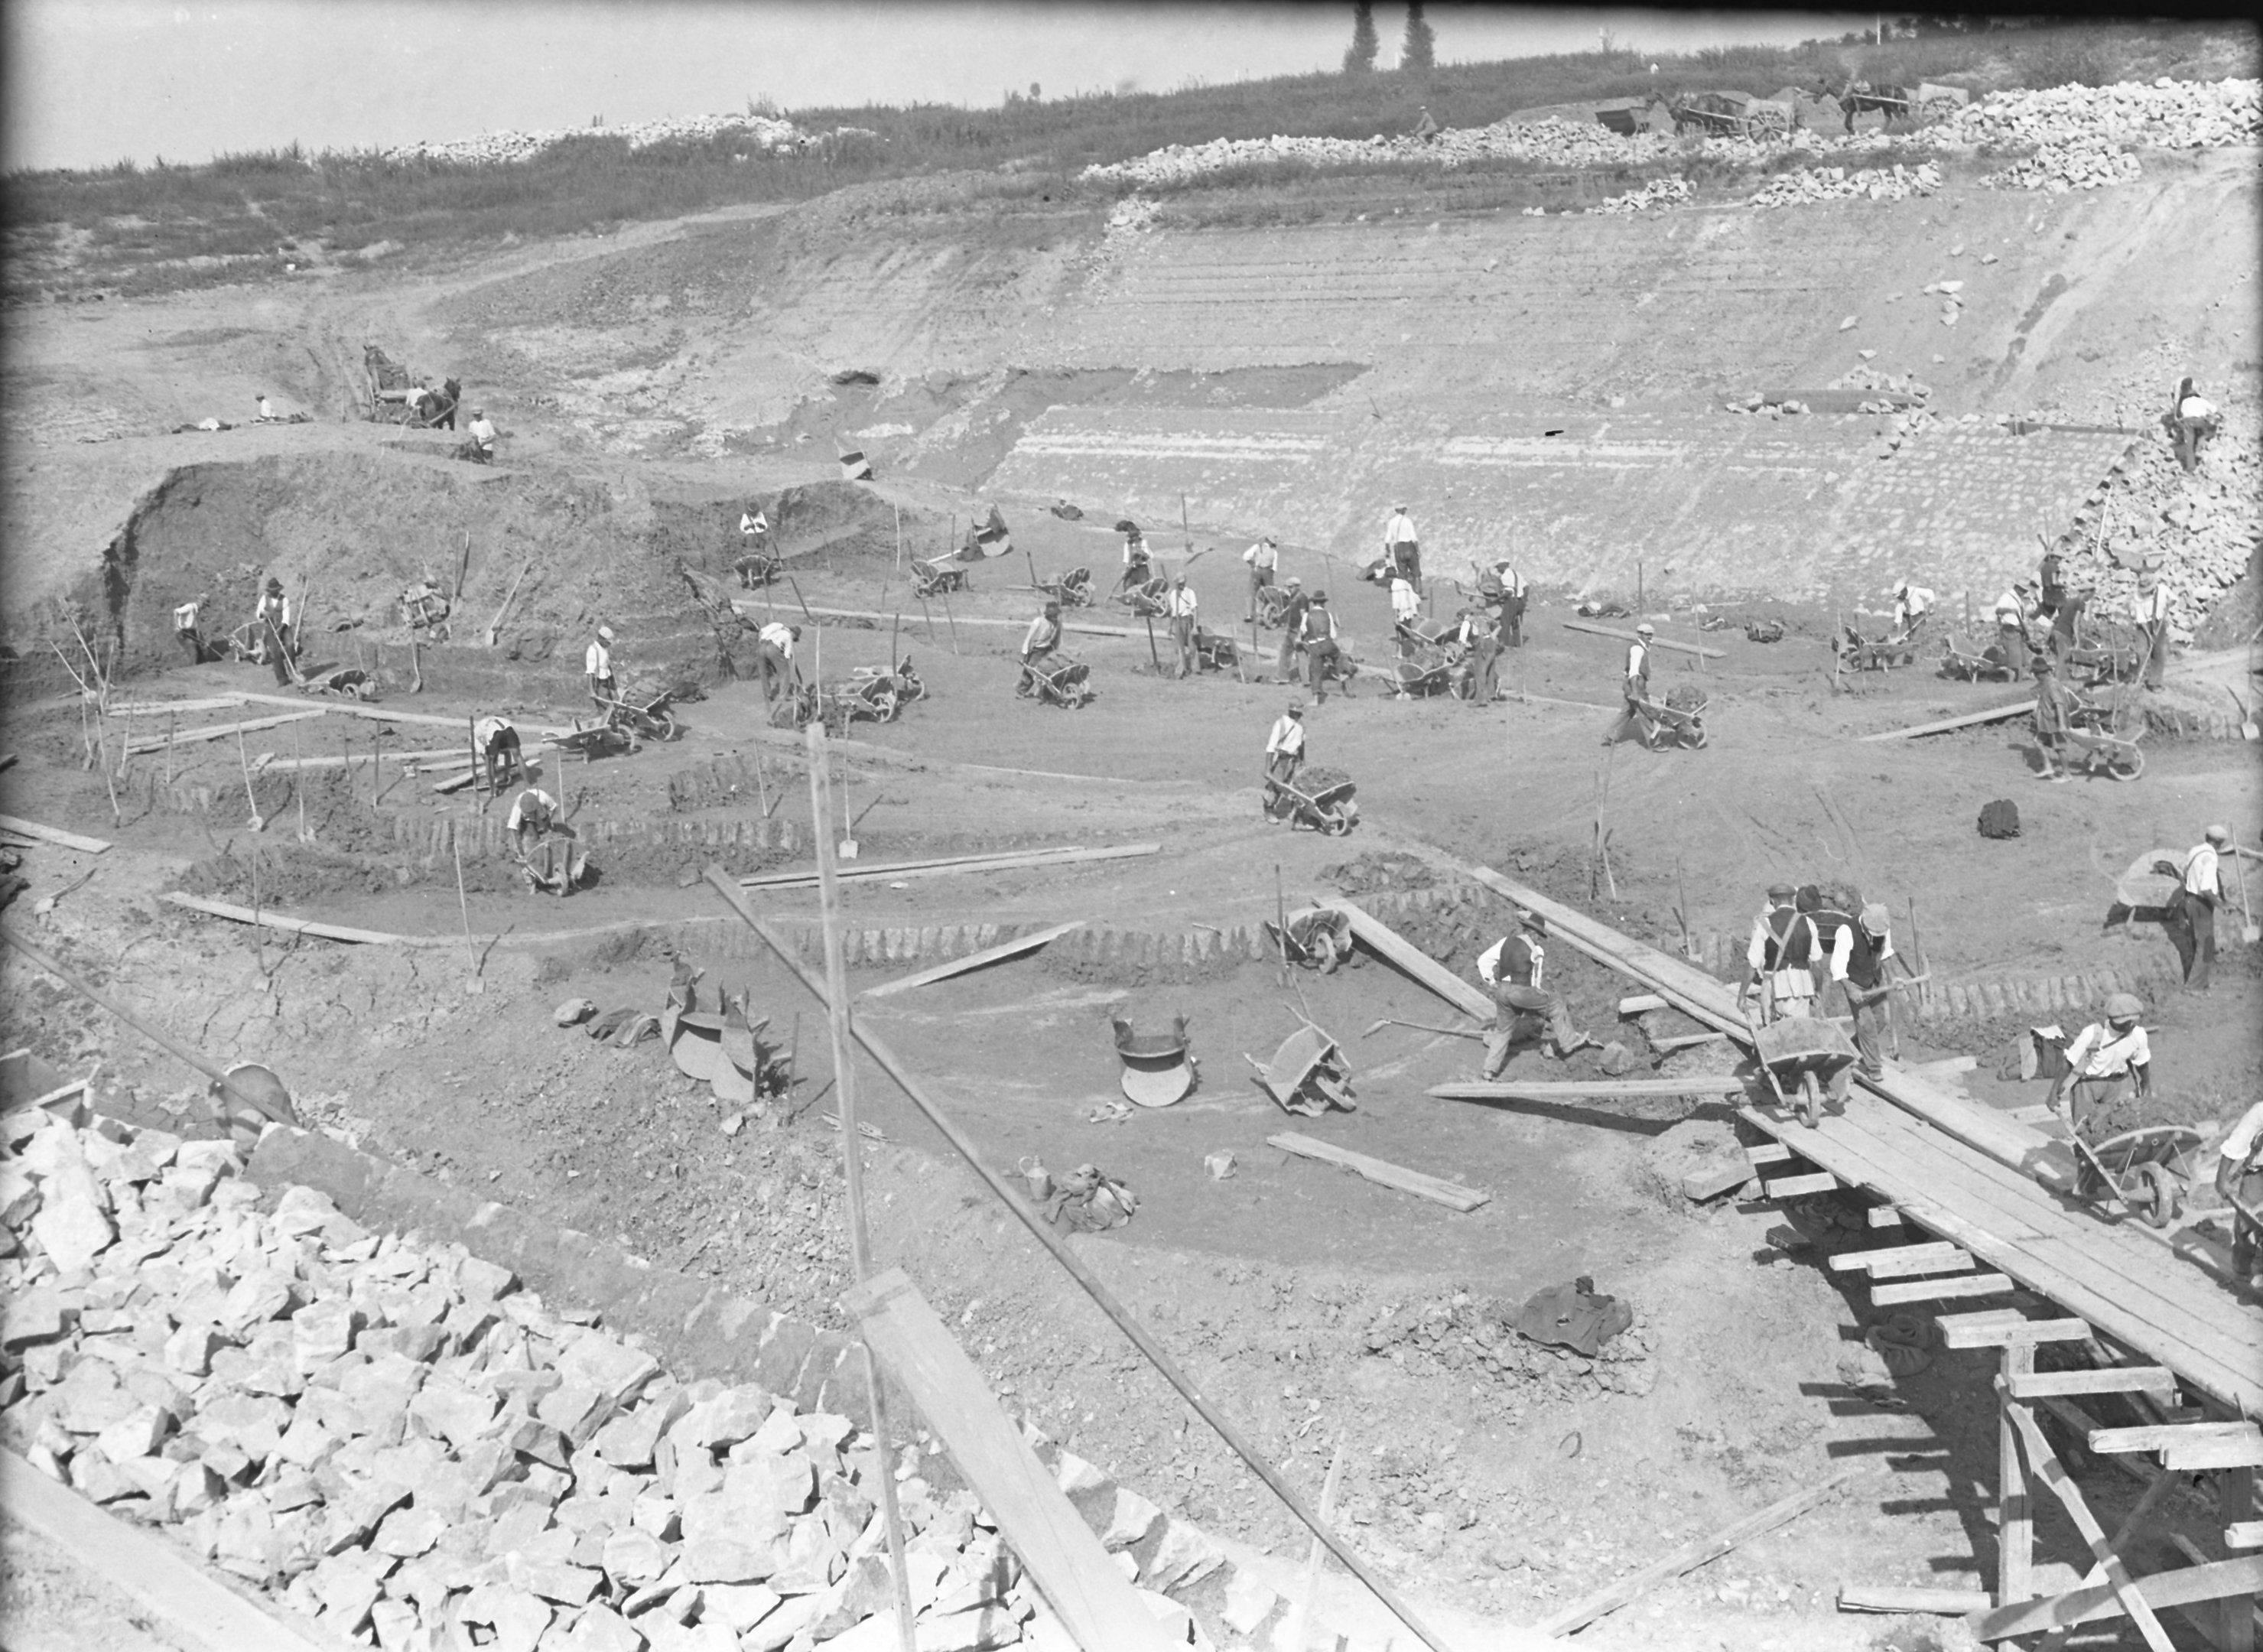 Depóniaelhordás feltöltésbe az utócsatornából, 1940. szeptember 6. (Magyar Környezetvédelmi és Vízügyi Múzeum - Duna Múzeum CC BY-NC-SA)